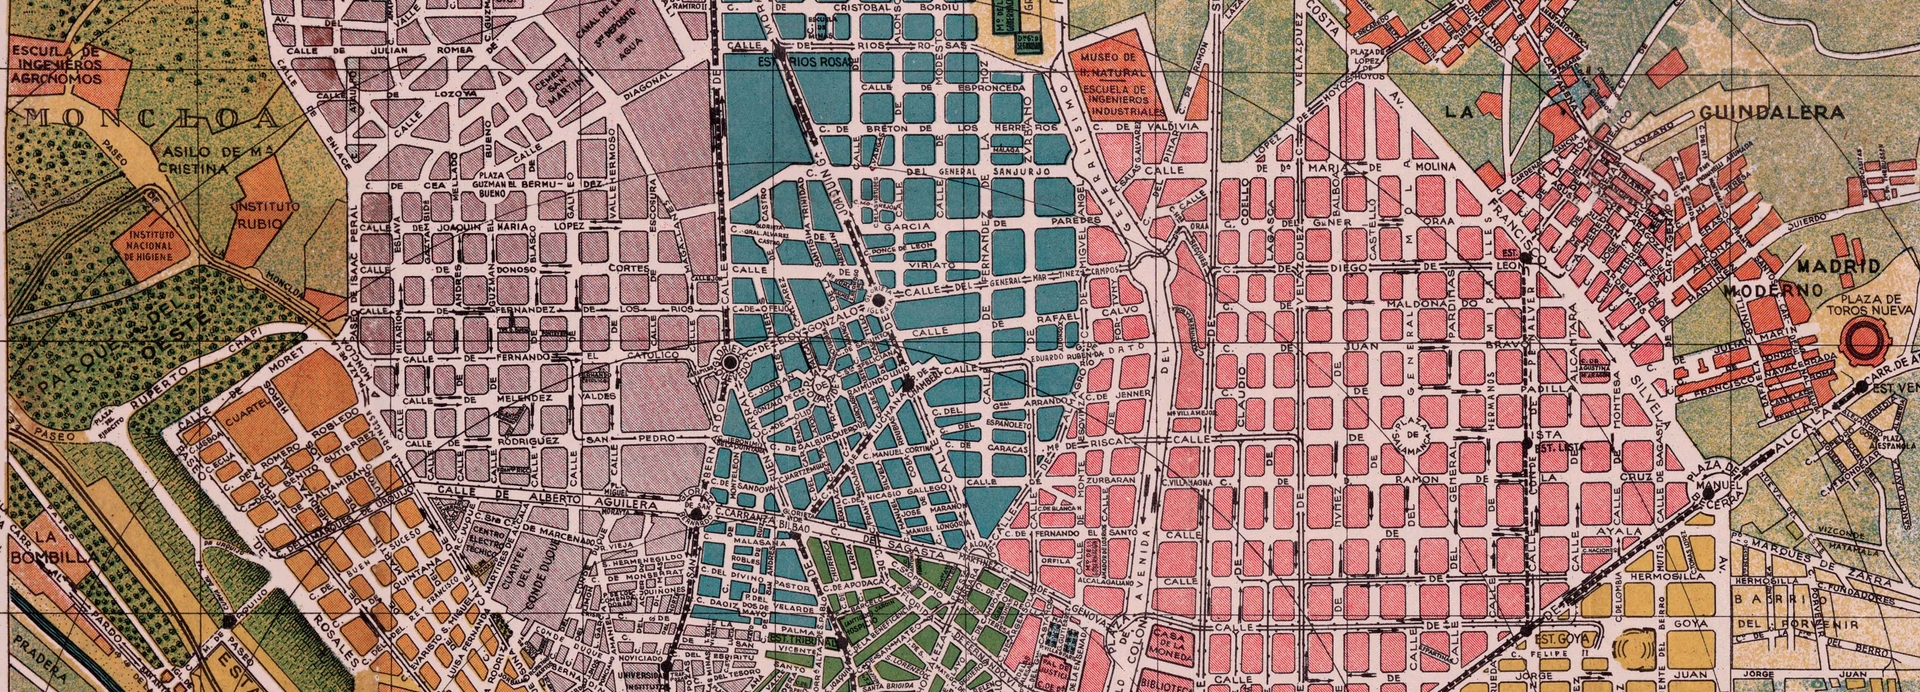 the same map image of Madrid after restoration